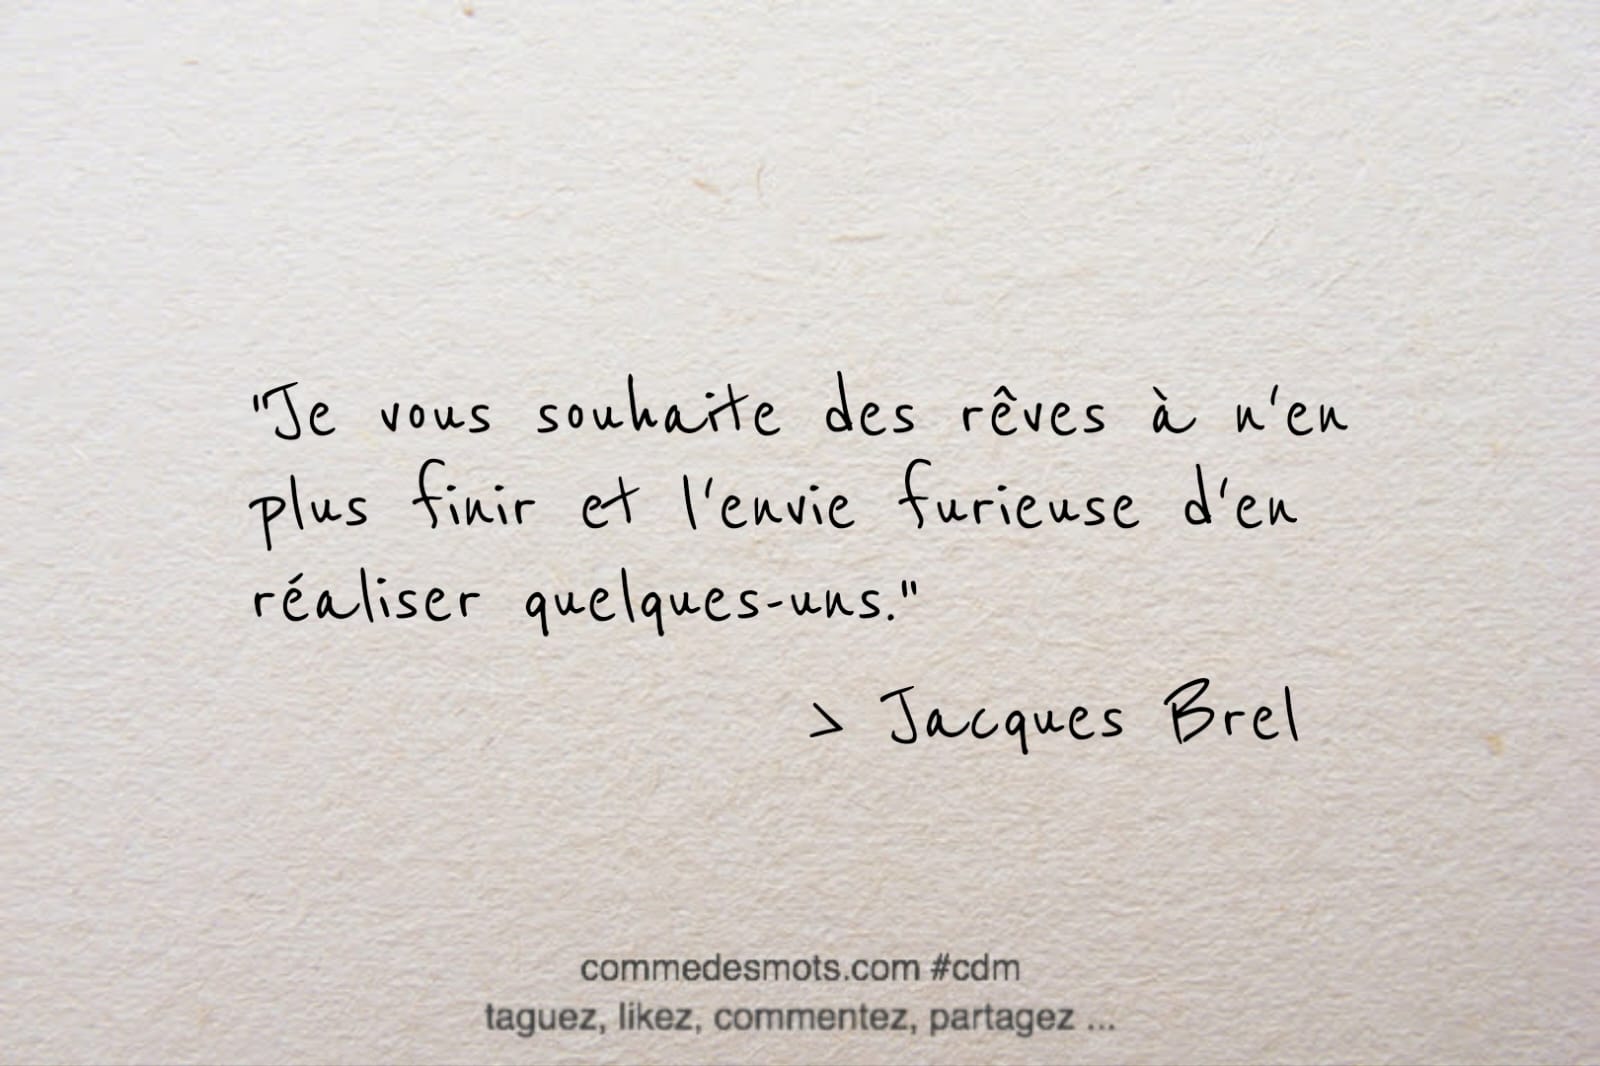 citation du jour de Jacques Brel : "Je vous souhaite des rêves à n'en plus finir et l'envie furieuse d'en réaliser quelques-uns."